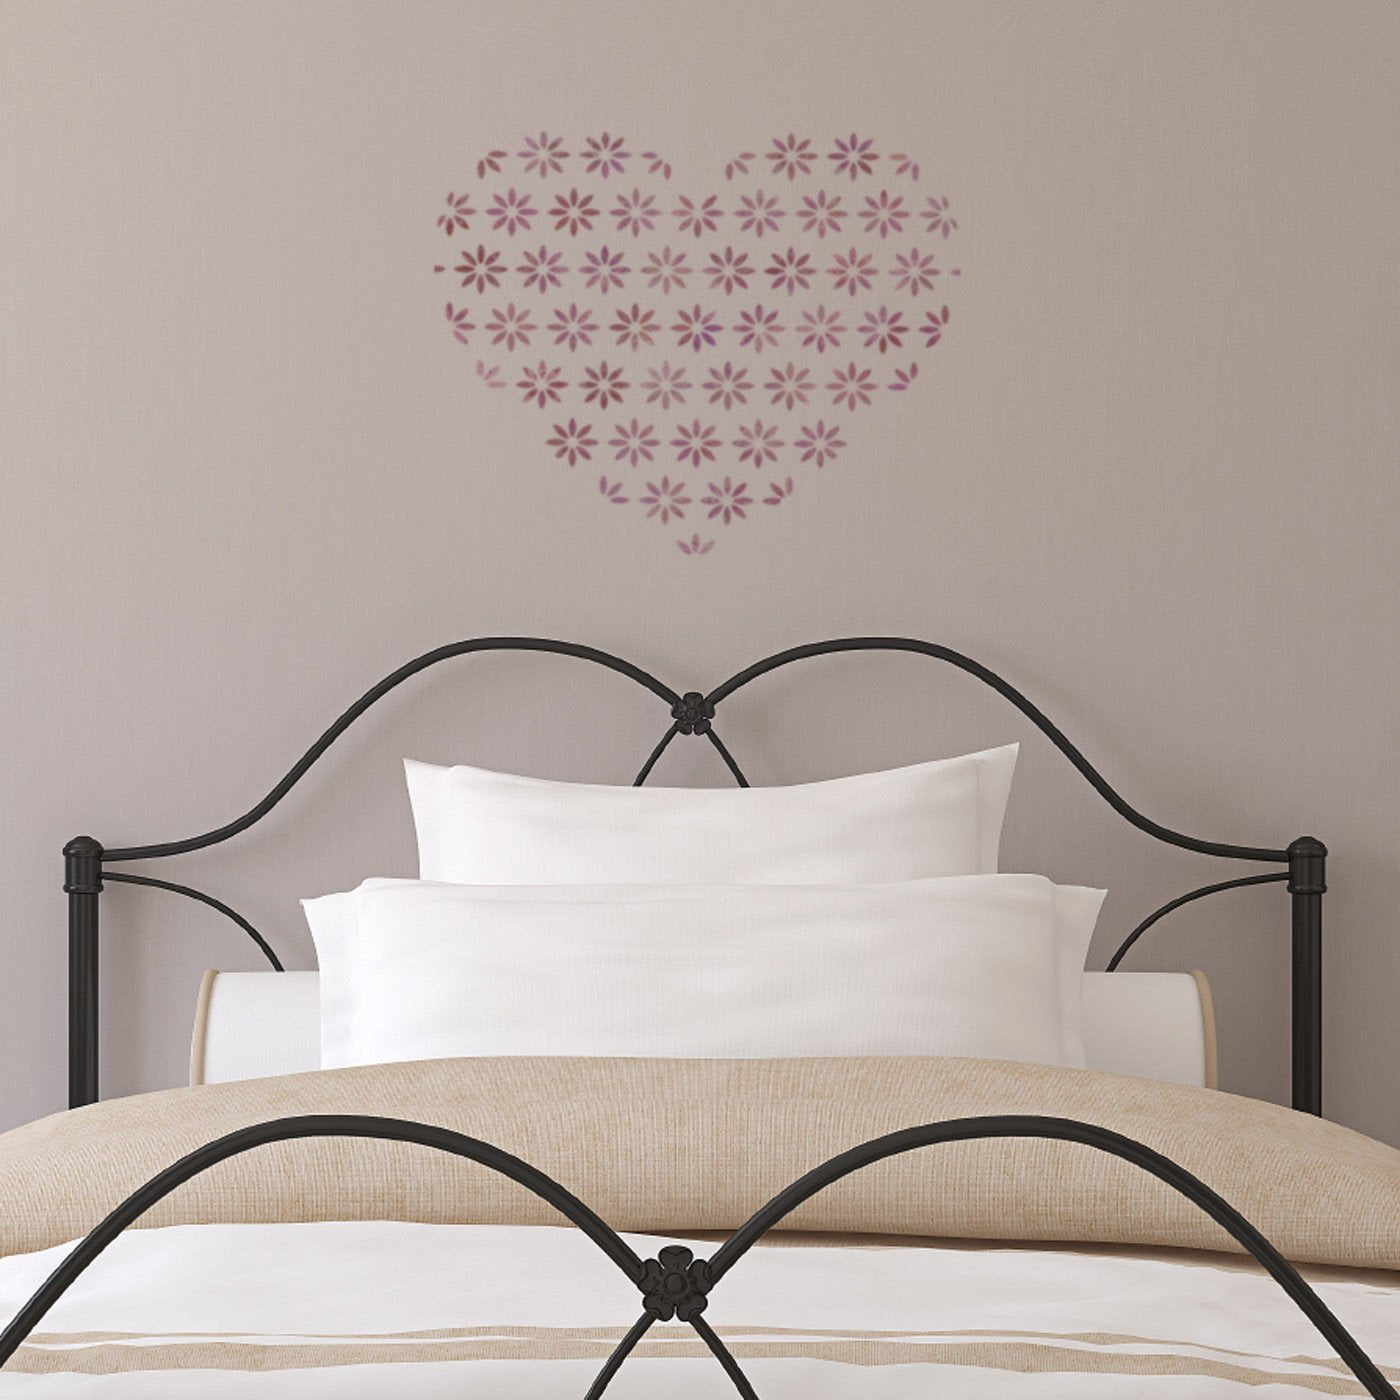 CraftStar Flower Pattern Heart Stencil on Bedroom Wall